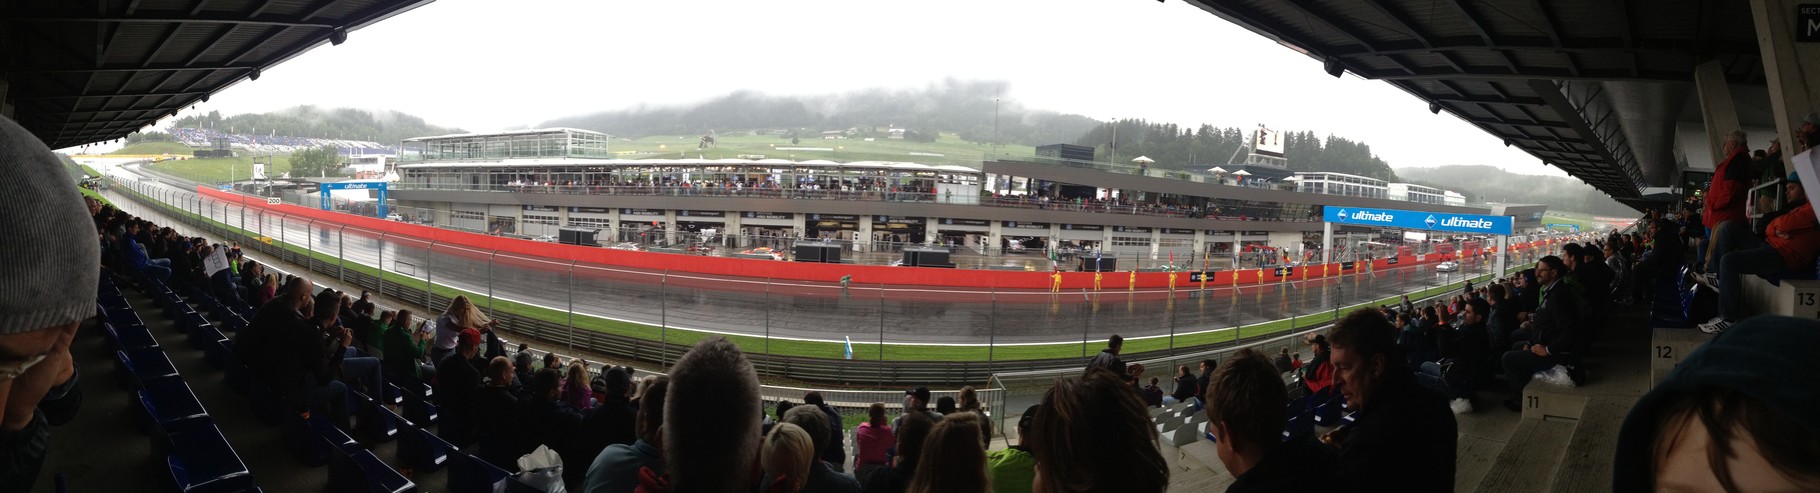 Haupttribünen-Blick vom Red Bull-Ring - hier DTM-Rennen